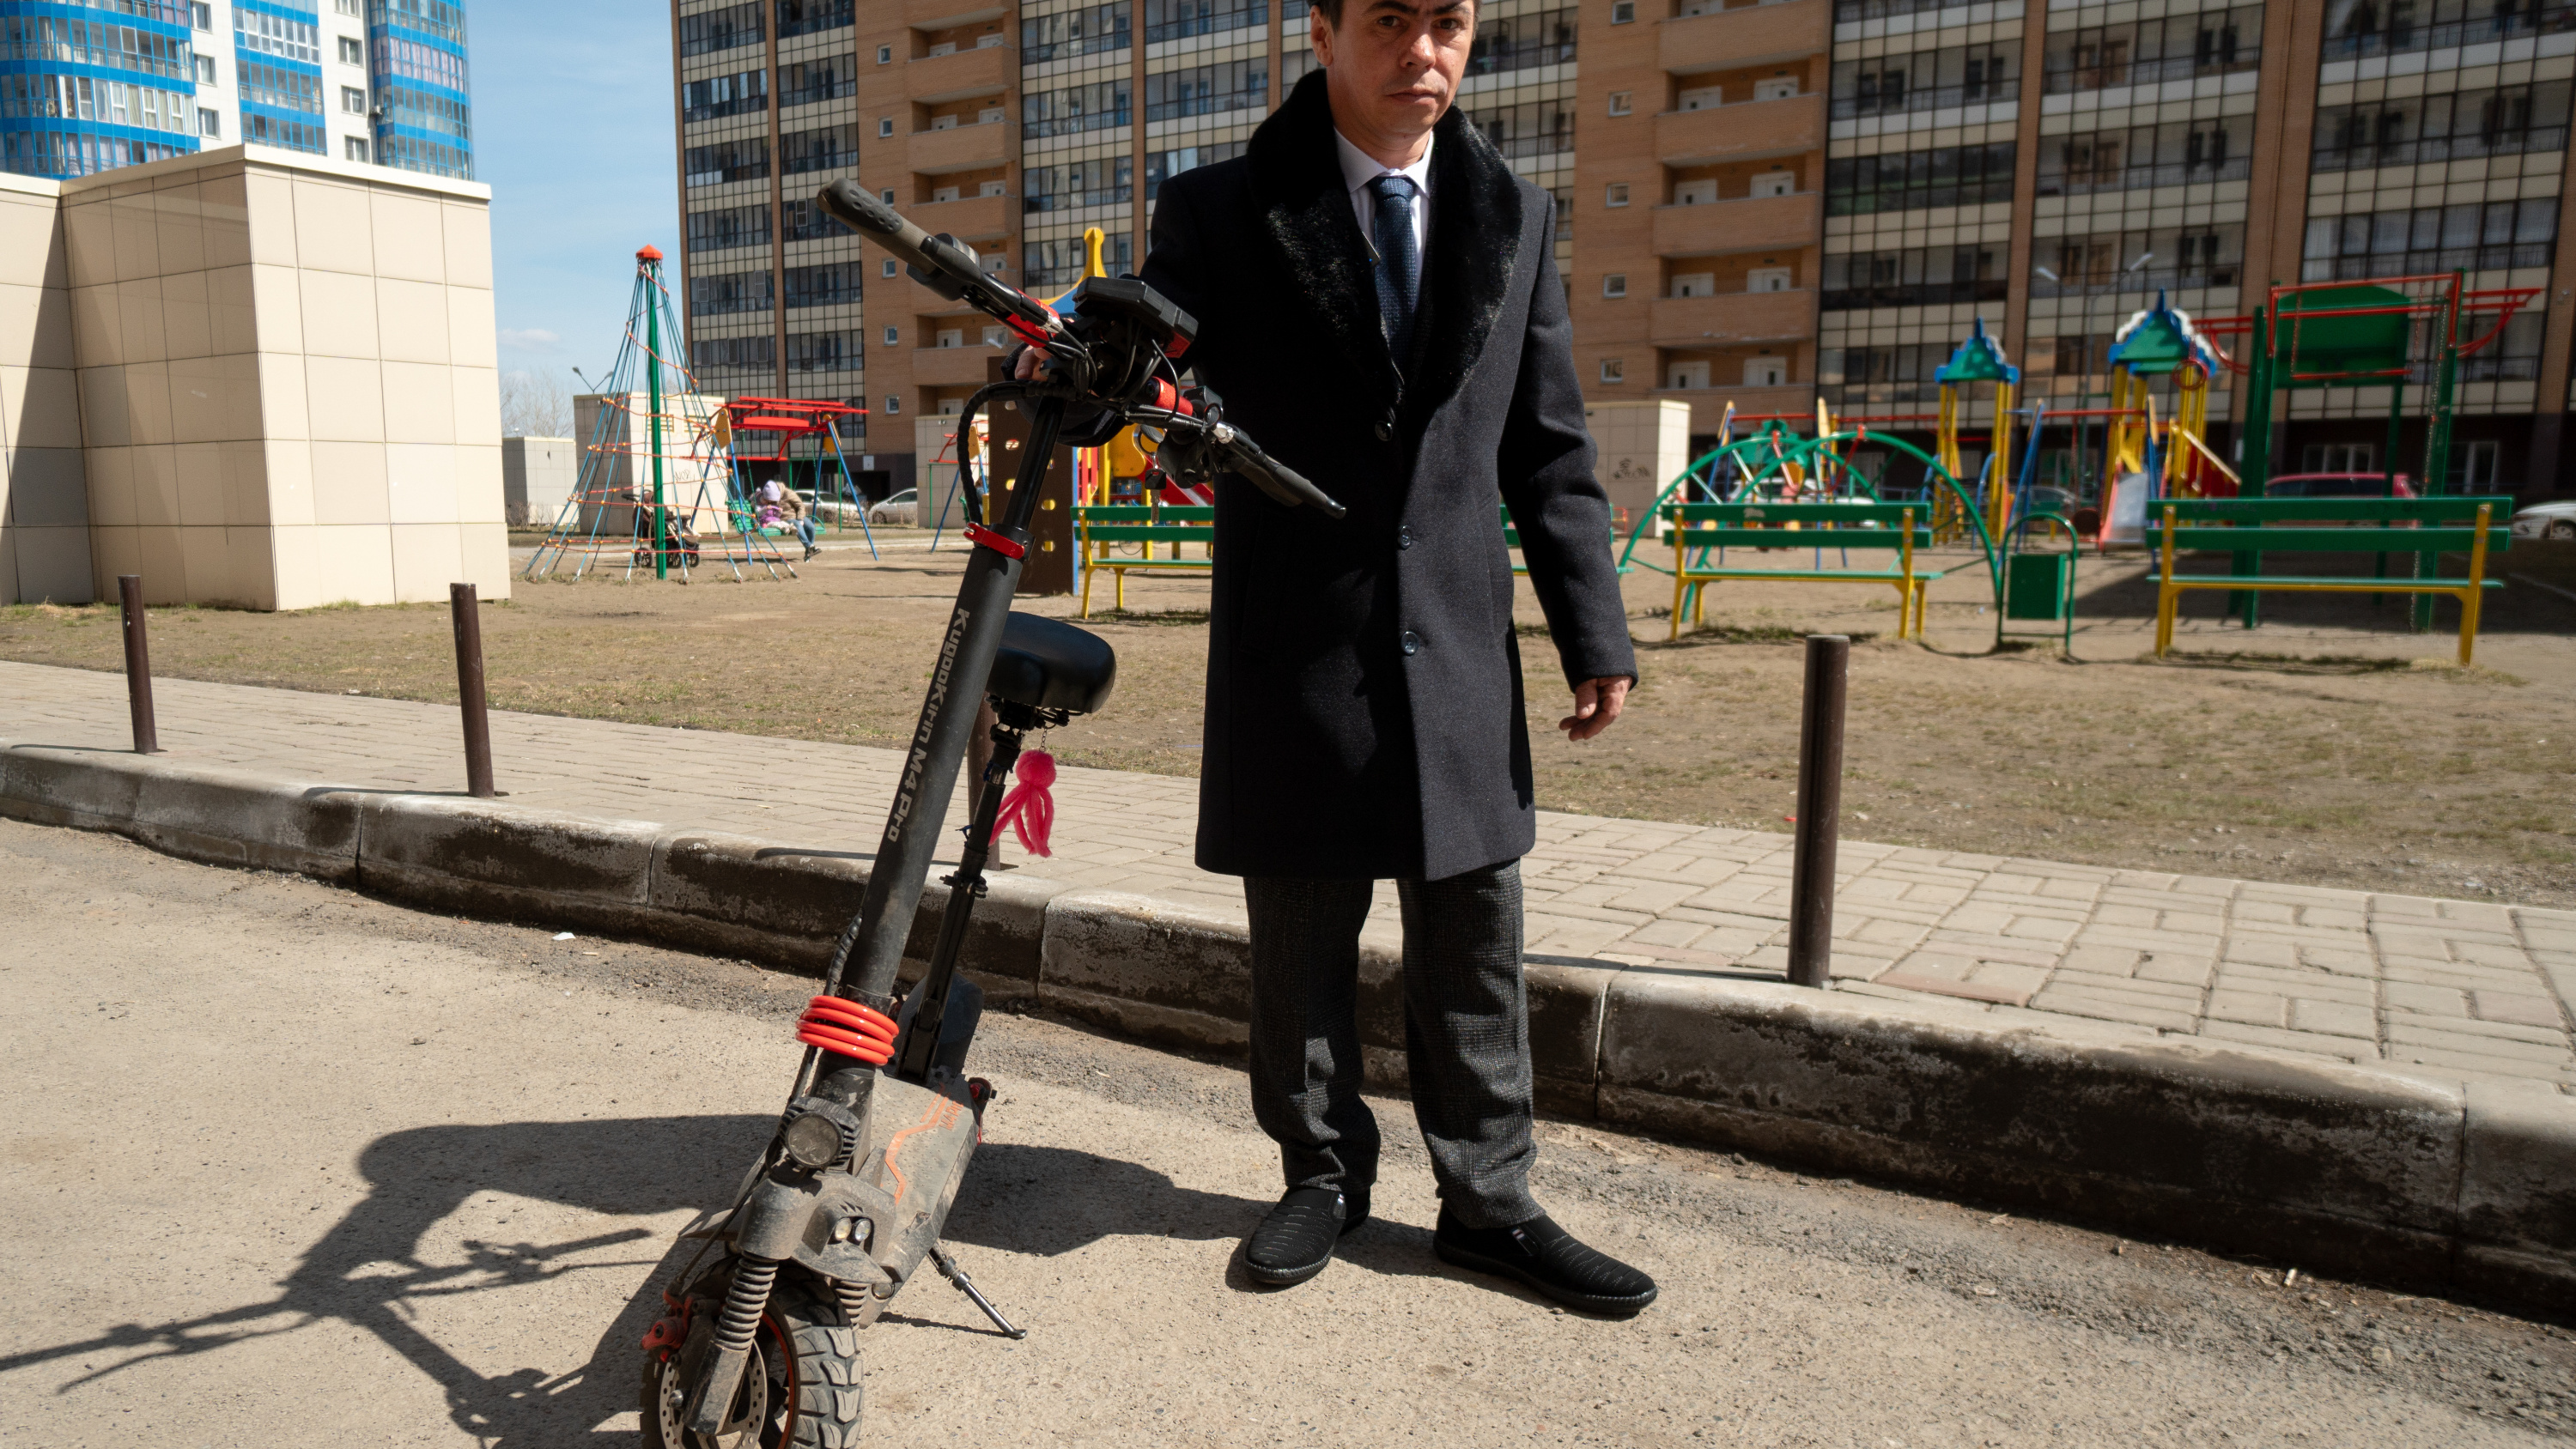 Самый известный уличный попрошайка Красноярска похвастался дорогим электросамокатом и другими обновками. Откуда деньги?